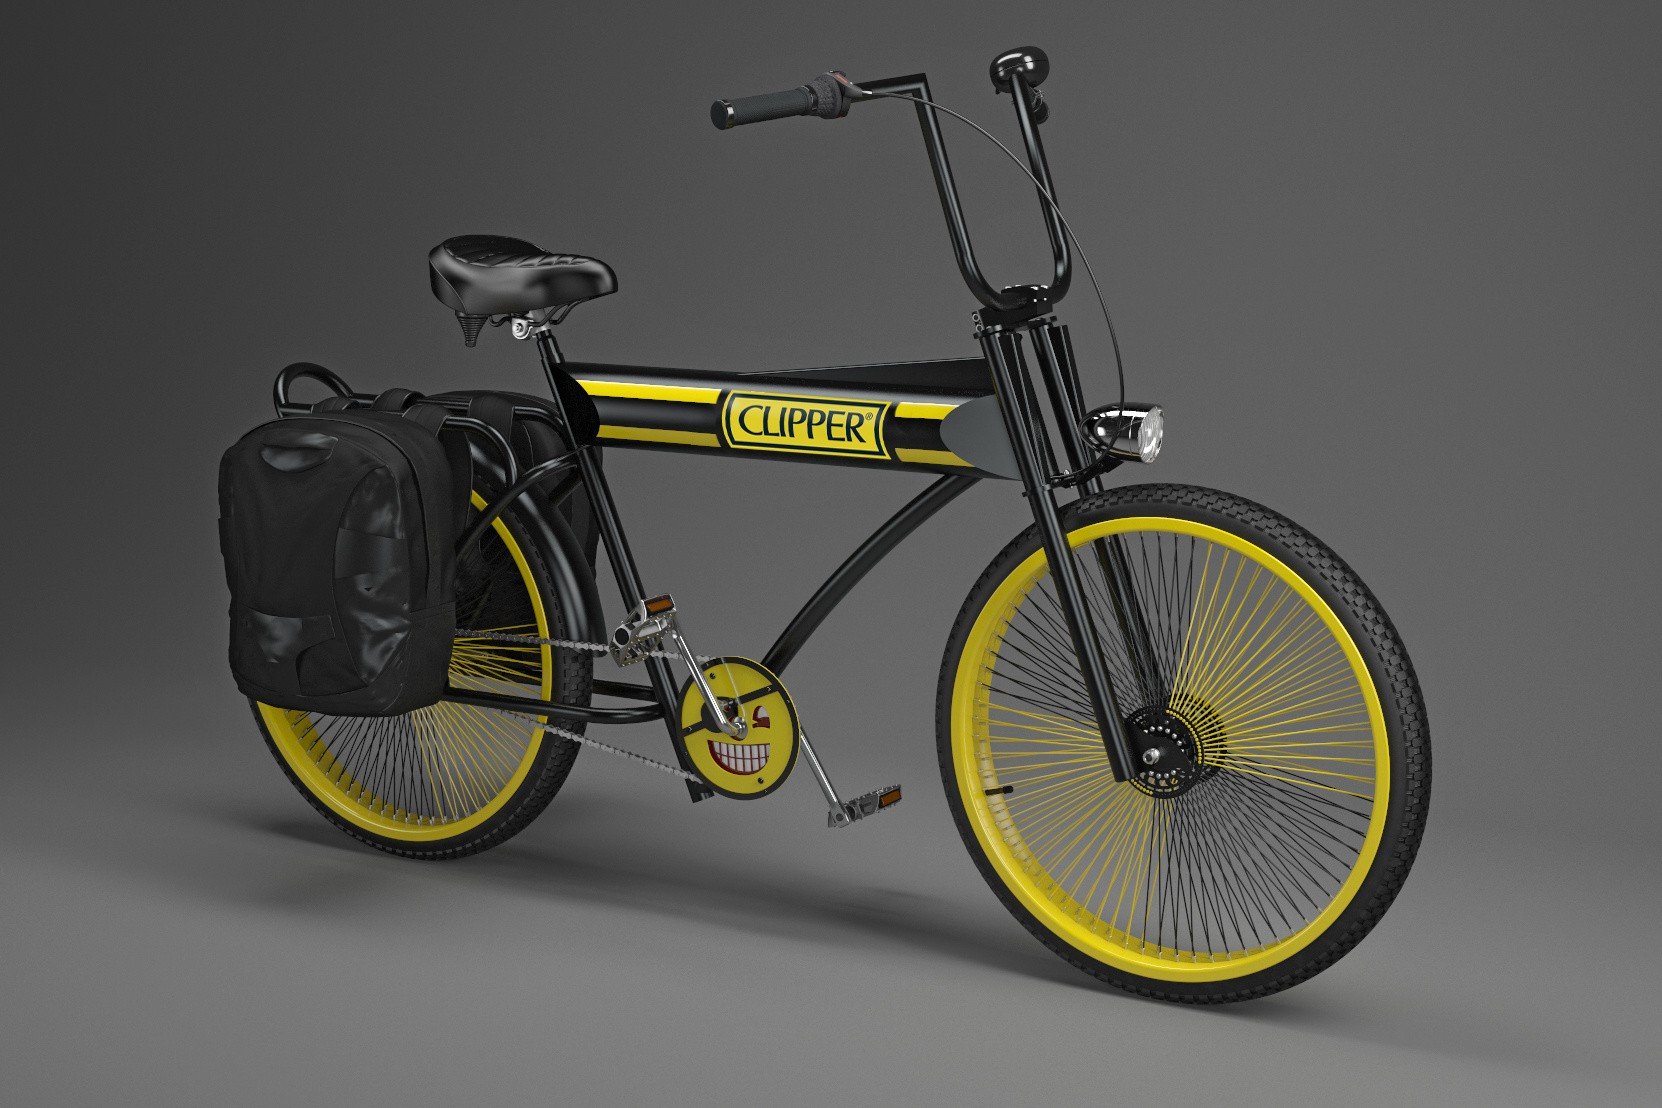 Rowery customowe z Mad Bicycles Adama Zdanowicza w sprzedaży z nową  warszawą. Pojadą też dla znanego producenta zapalniczek | Kurier Poranny